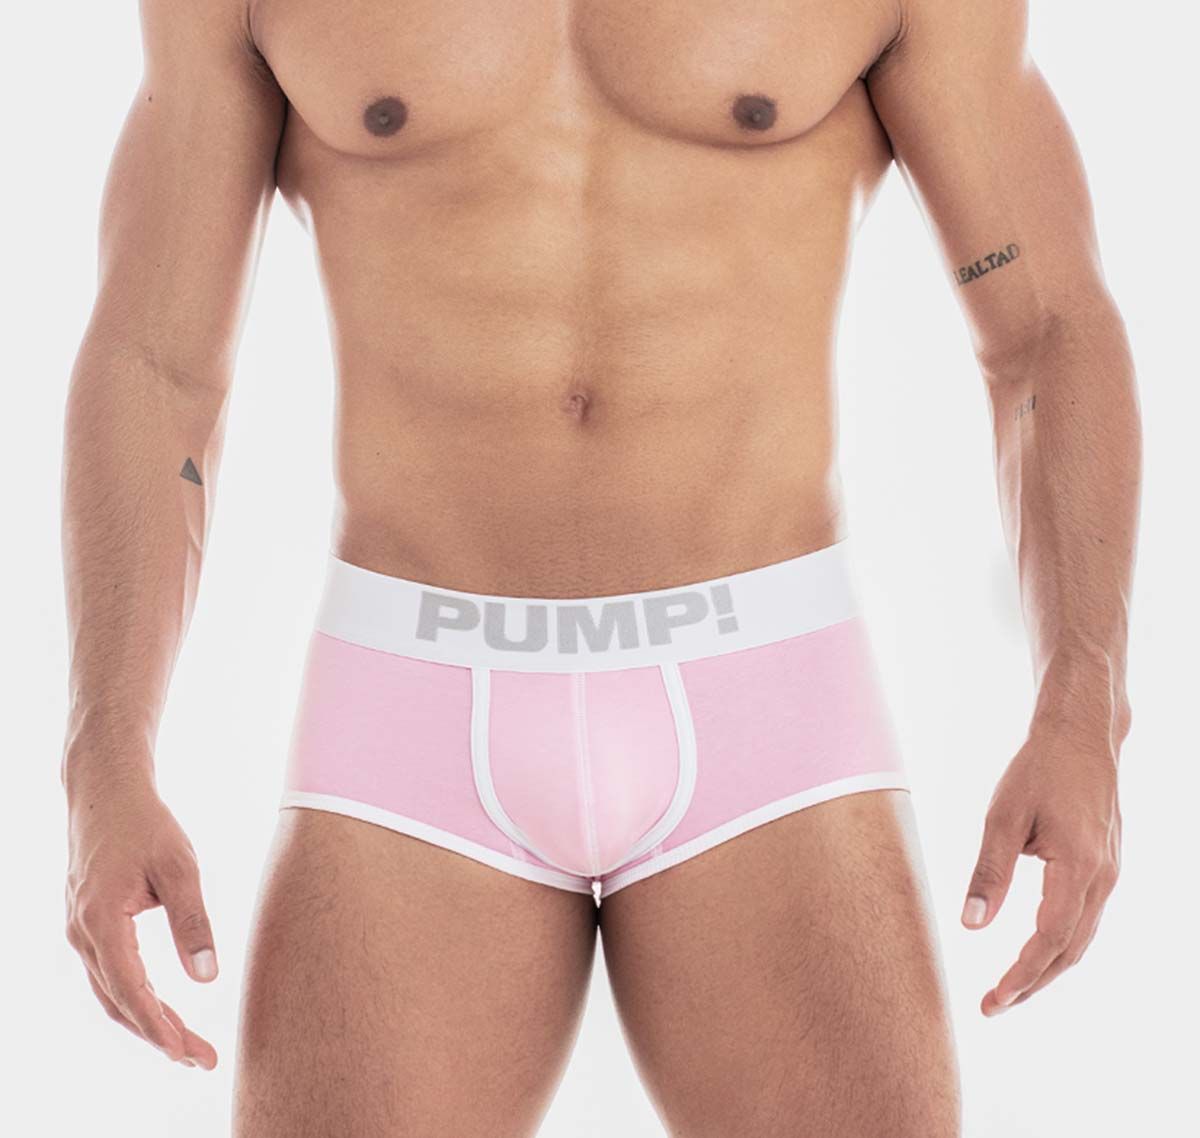 PUMP! Boxers MILKSHAKE BUBBLE GUM ACCESS 15074, pink